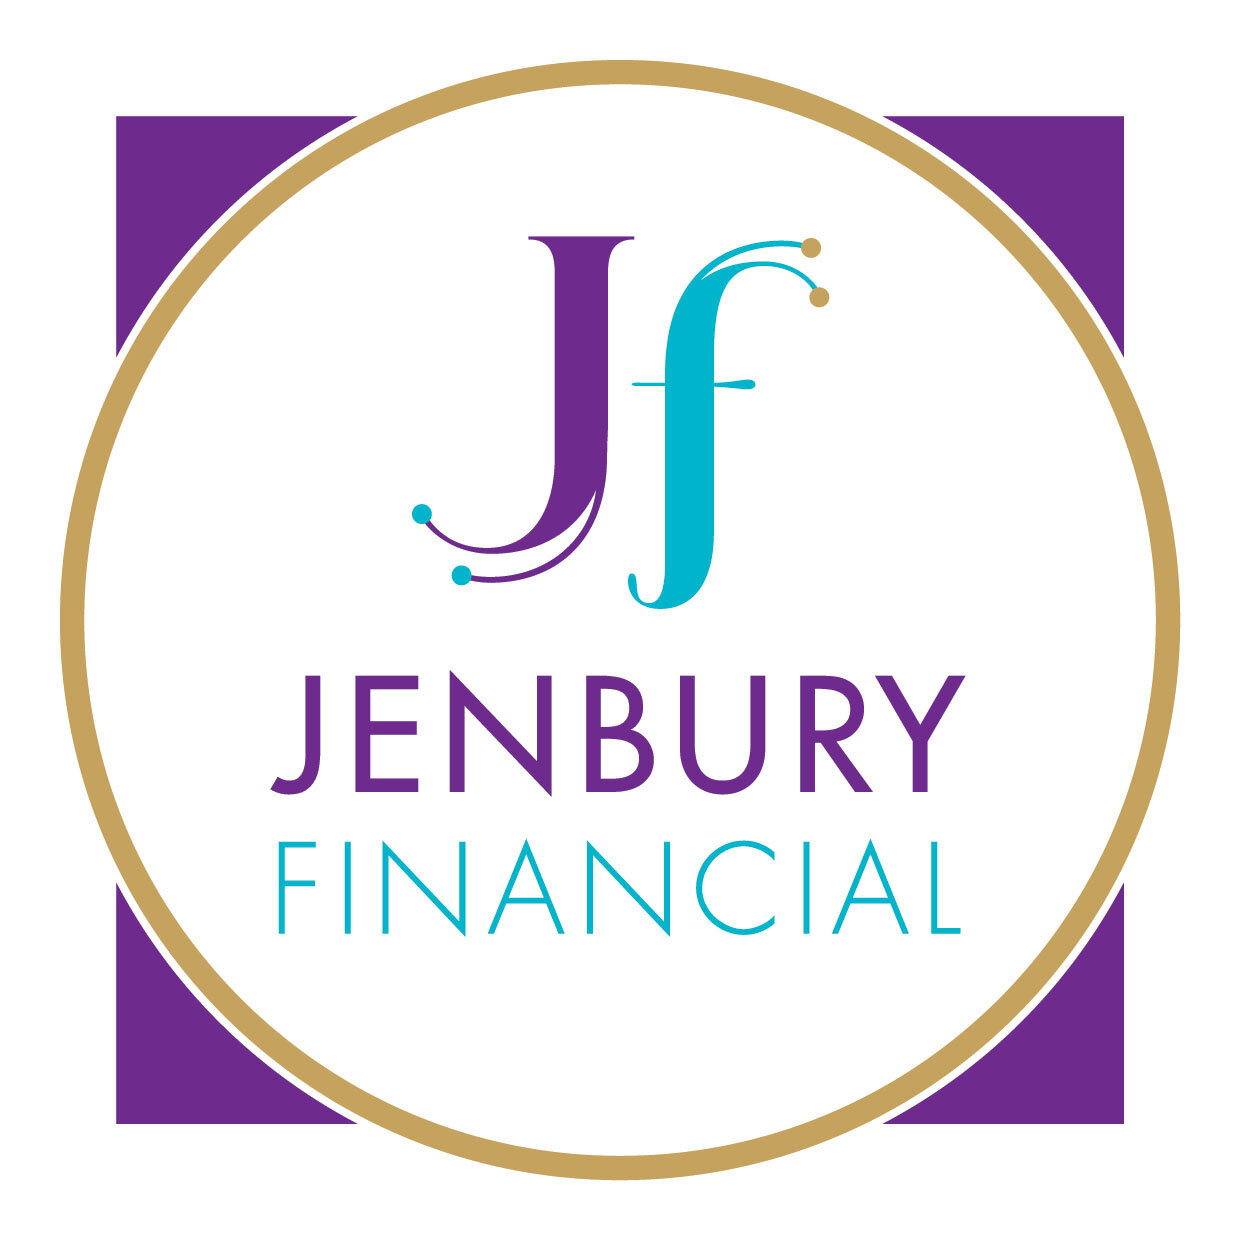 Jenbury Financial